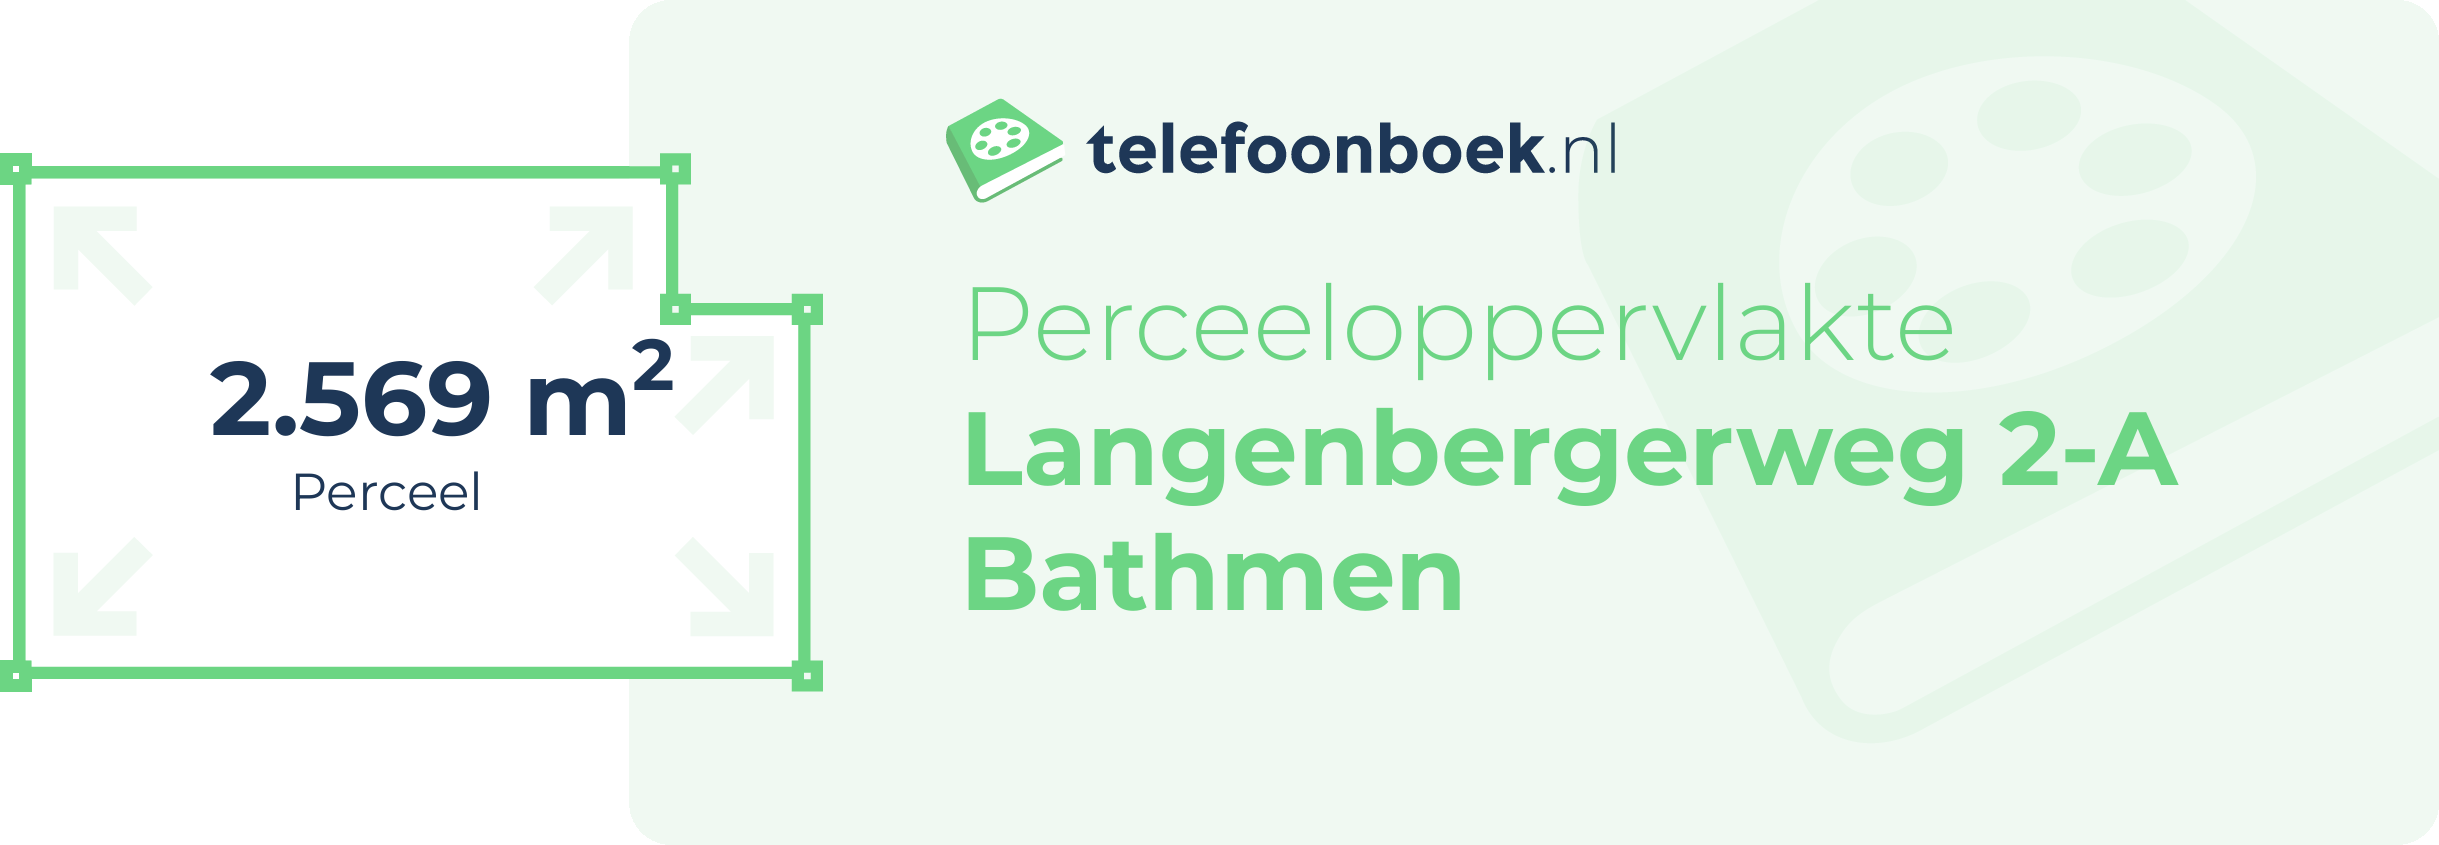 Perceeloppervlakte Langenbergerweg 2-A Bathmen